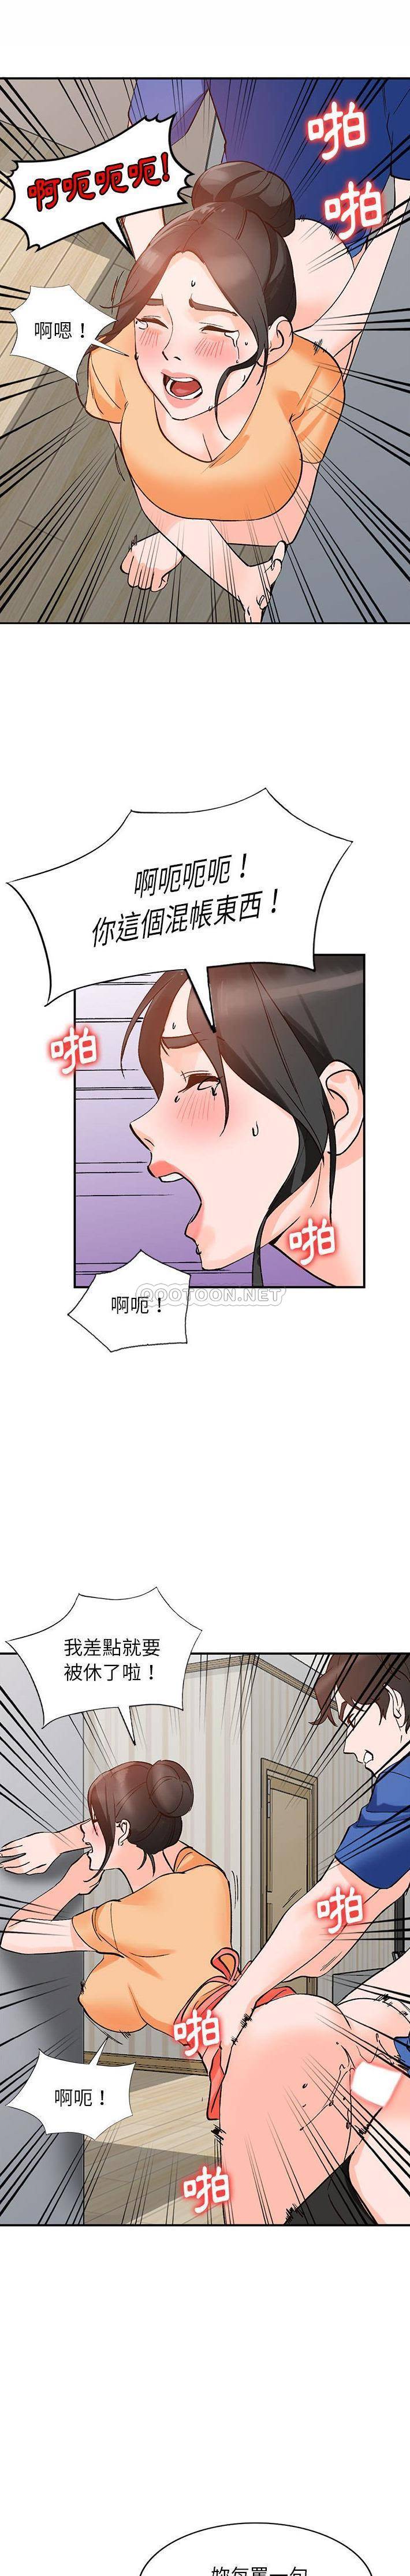 韩国污漫画 她們的小秘密(小鎮上的女人們) 第11话 11